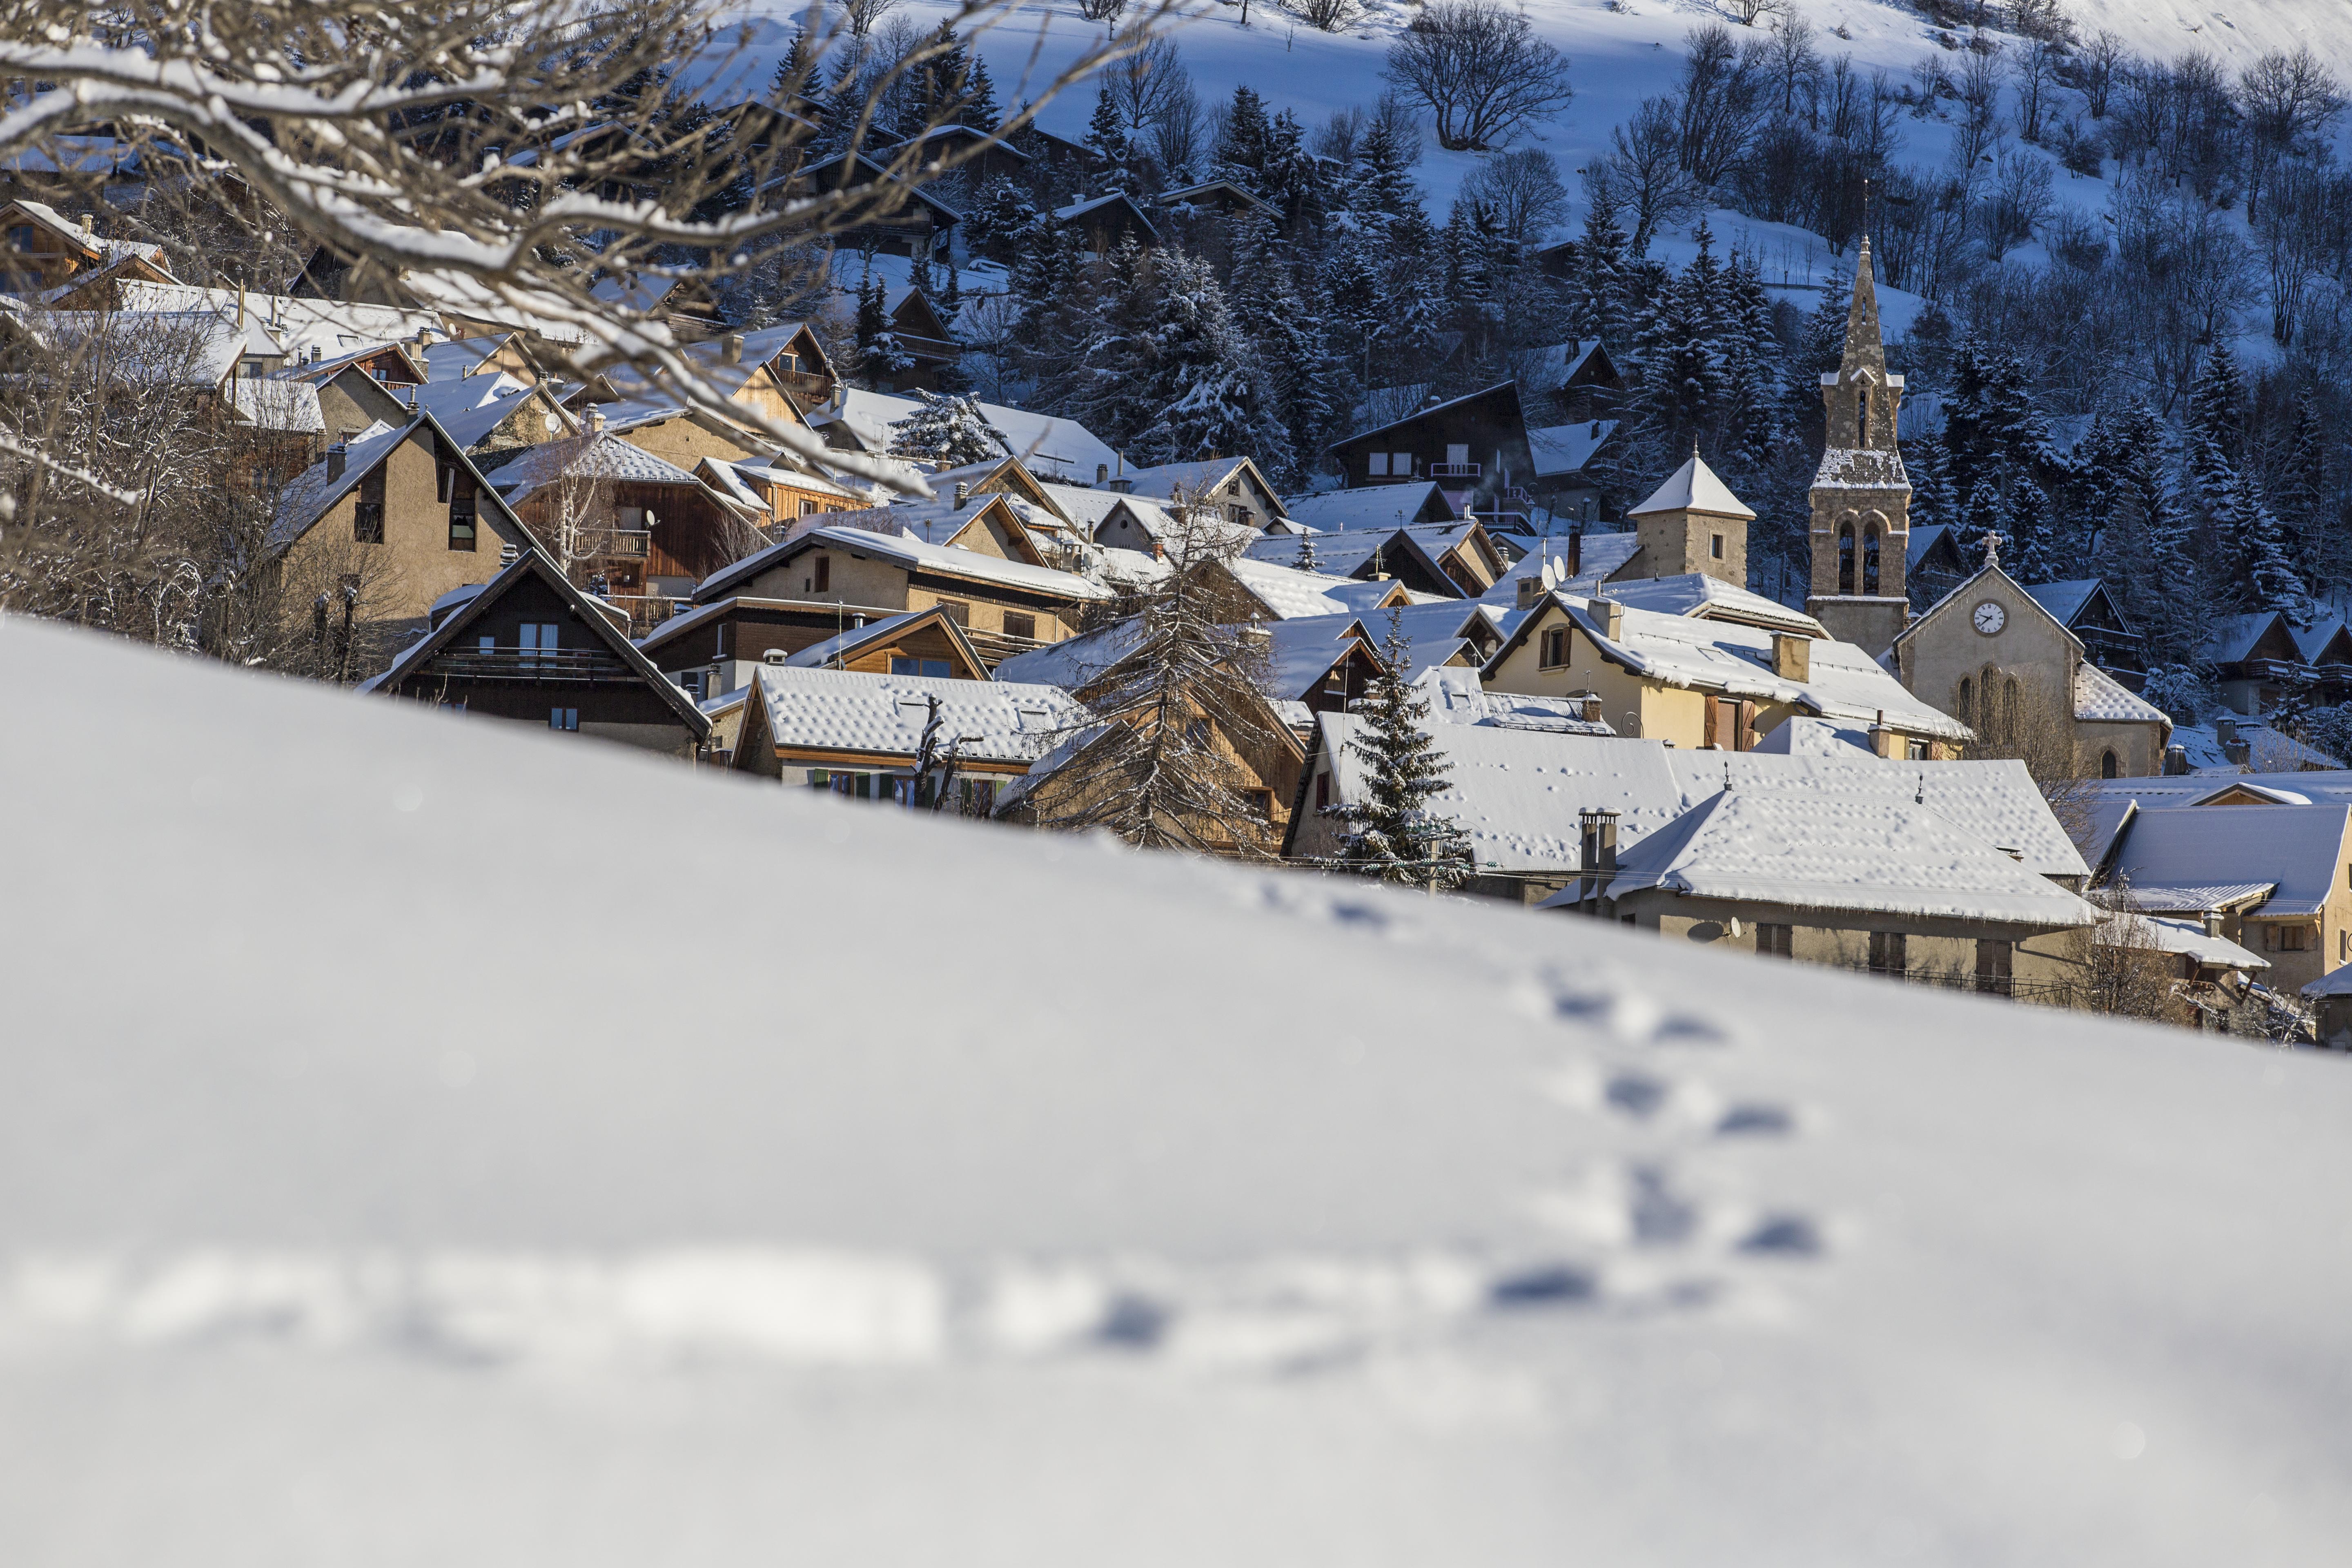 ski resort Alpe d'Huez